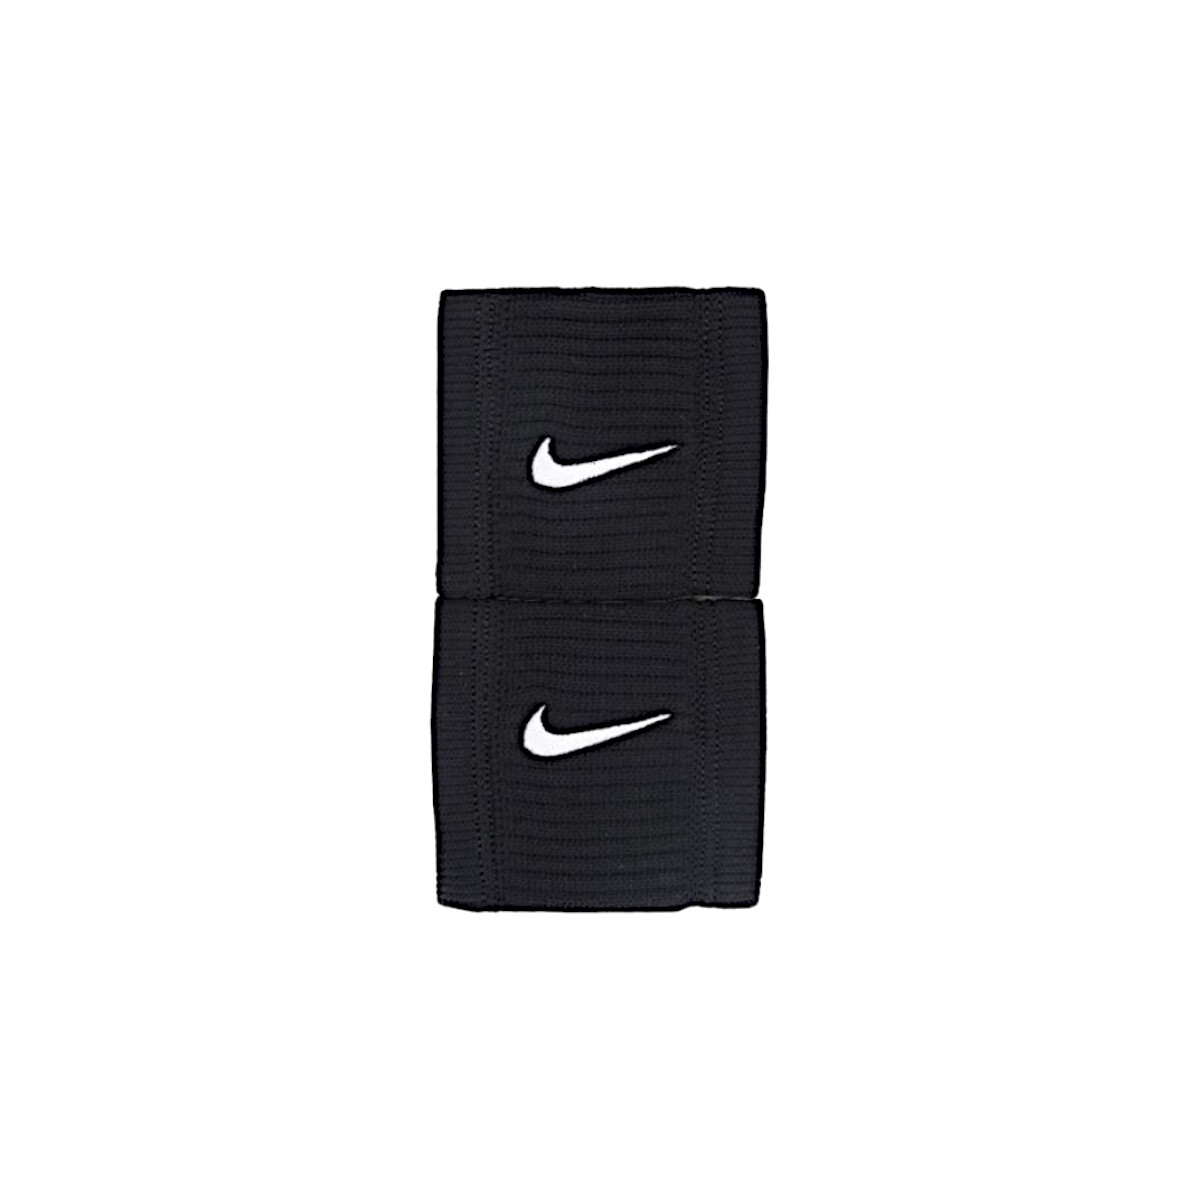 Doplňky  Sportovní doplňky Nike Dri-Fit Reveal Wristbands Černá